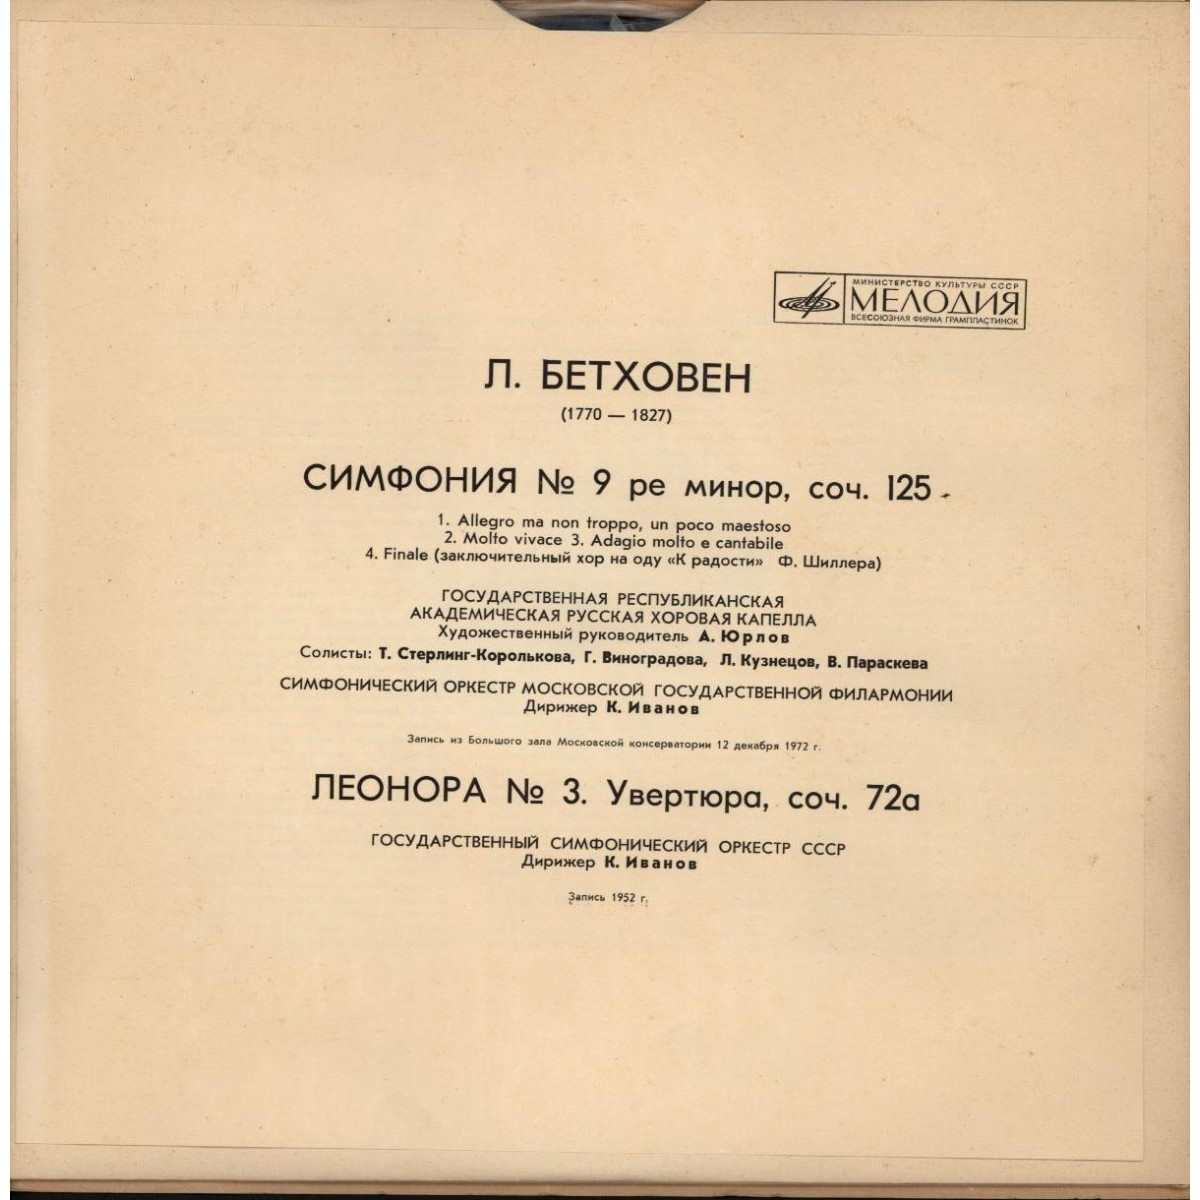 Л. Бетховен: Симфония № 9, Леонора № 3 (К. Иванов)